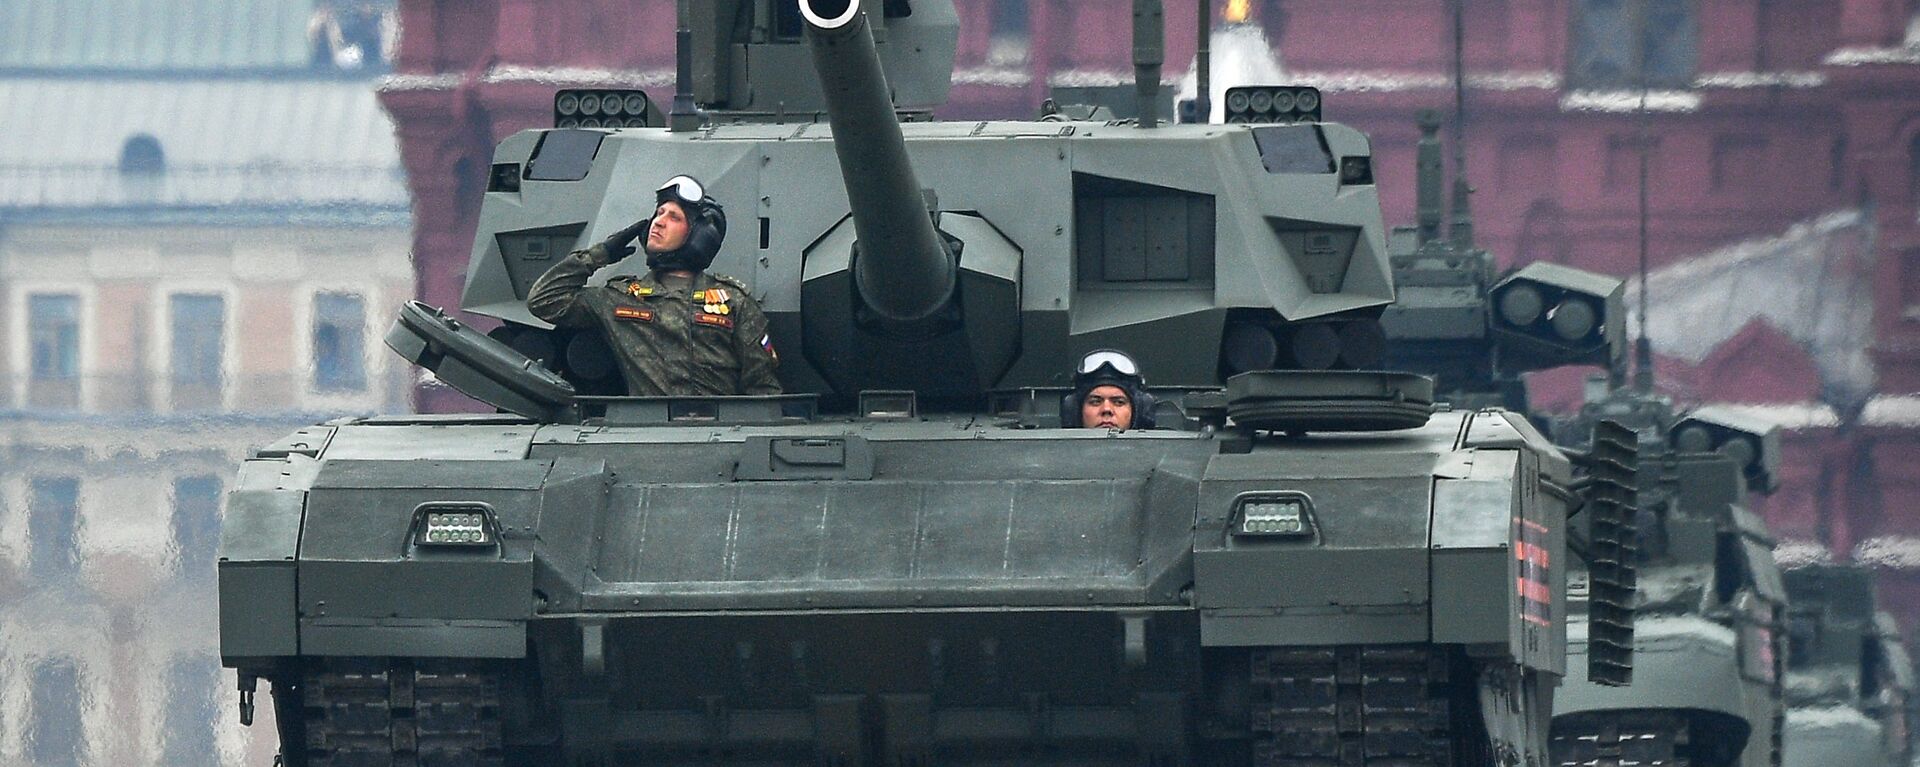 Тенк Т-14 „Армата“ на Црвеном тргу у Москви, на паради поводом Дана победе над фашизмом - Sputnik Србија, 1920, 26.11.2021